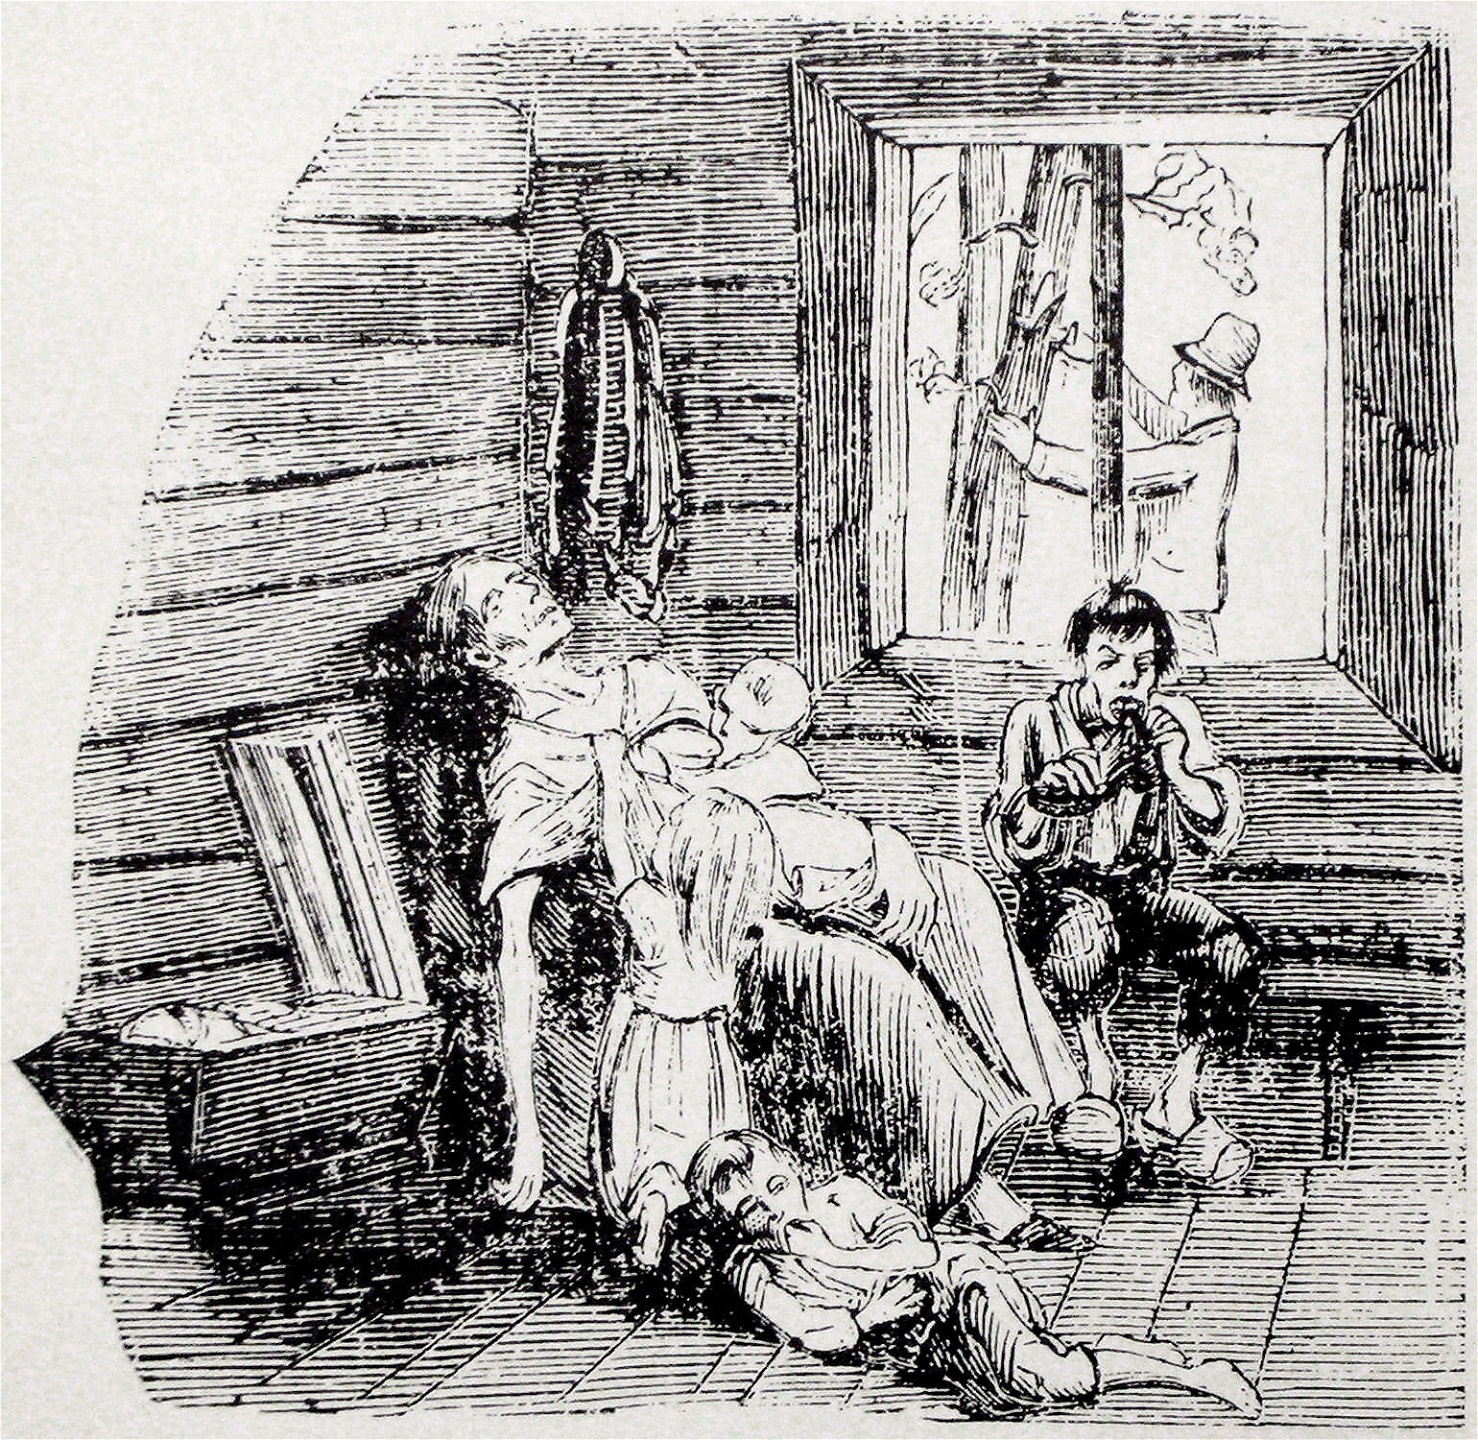 Illustration av svälten i Norrland ur tidningen Fäderneslandet år 1867. En moder ligger döende medan sonen äter på en känga och en man täljer bark från trädet utanför.